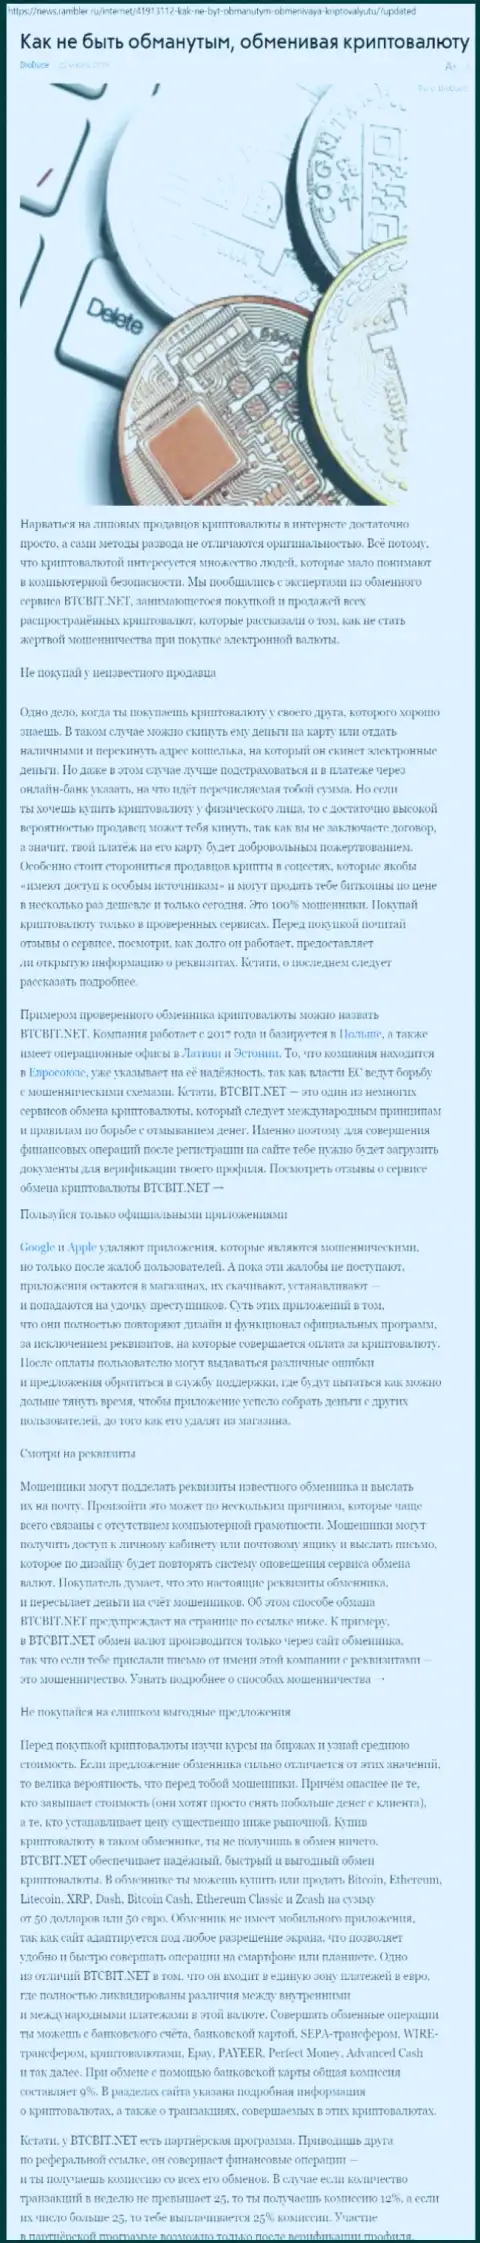 Статья об обменнике БТЦБИТ на news rambler ru